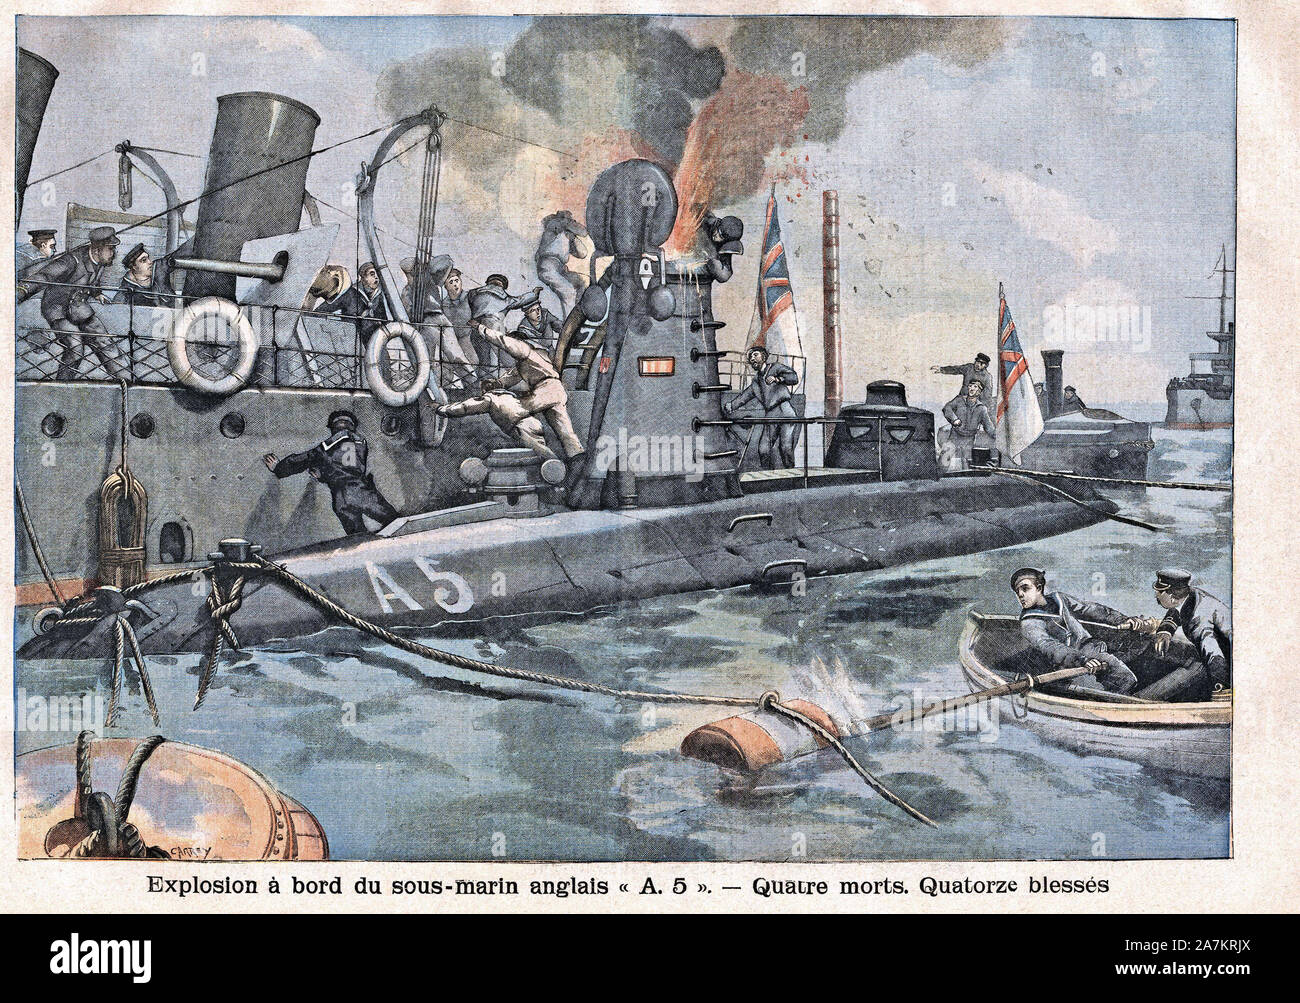 Explosion accidentelle a Bord du sous marin Anglais 'A5' ein Queenstown en Irlande, FAISANT 4 Morts. Tiefdruck in "Le Petit Parisien', le 05/03/1905. Stockfoto